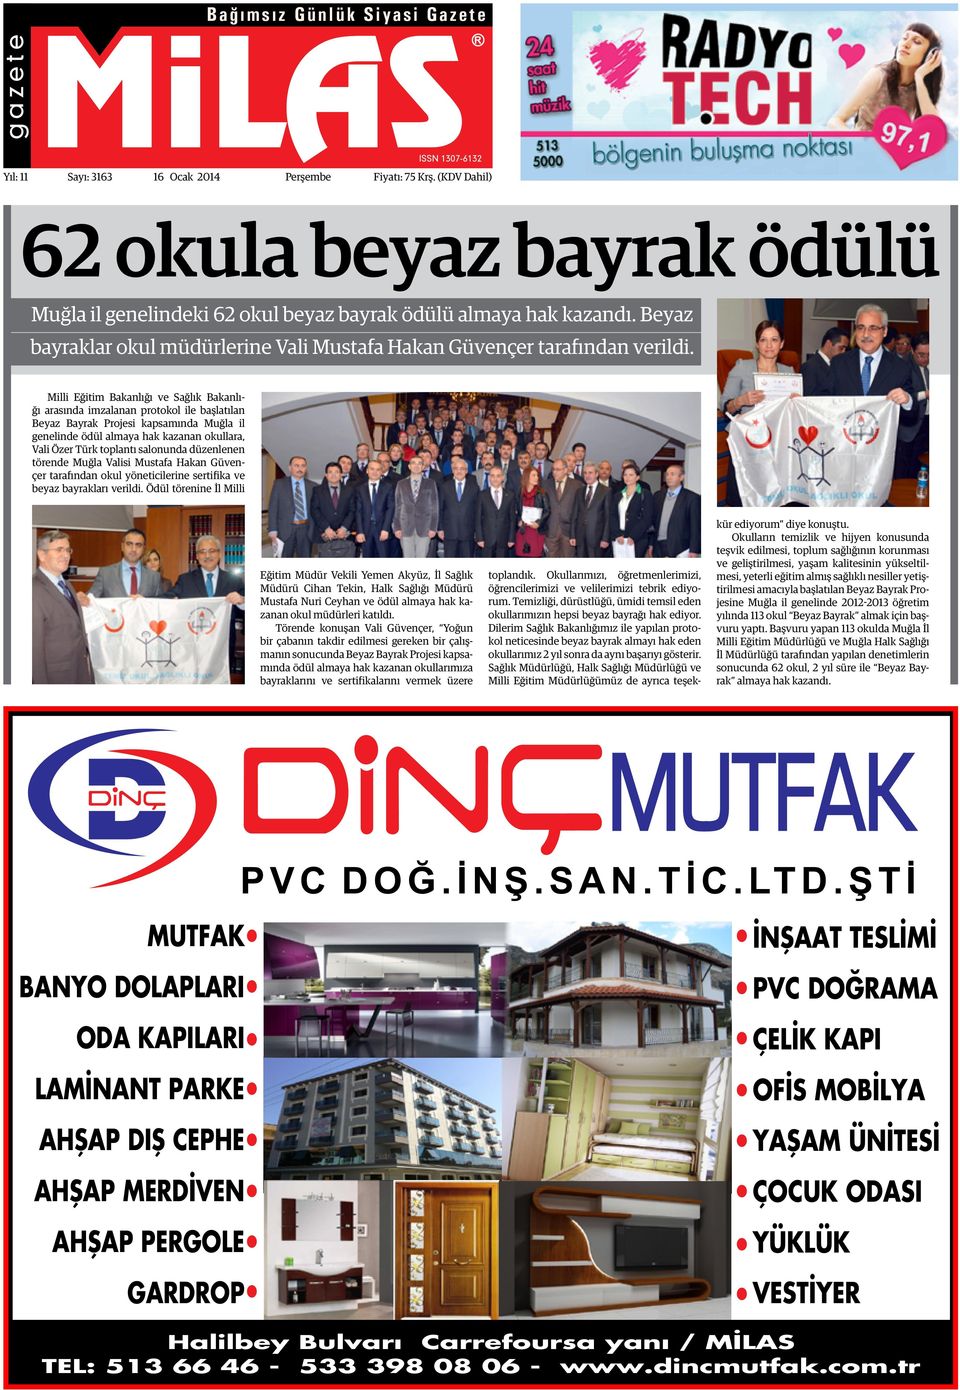 Milli Eğitim Bakanlığı ve Sağlık Bakanlığı arasında imzalanan protokol ile başlatılan Beyaz Bayrak Projesi kapsamında Muğla il genelinde ödül almaya hak kazanan okullara, Vali Özer Türk toplantı